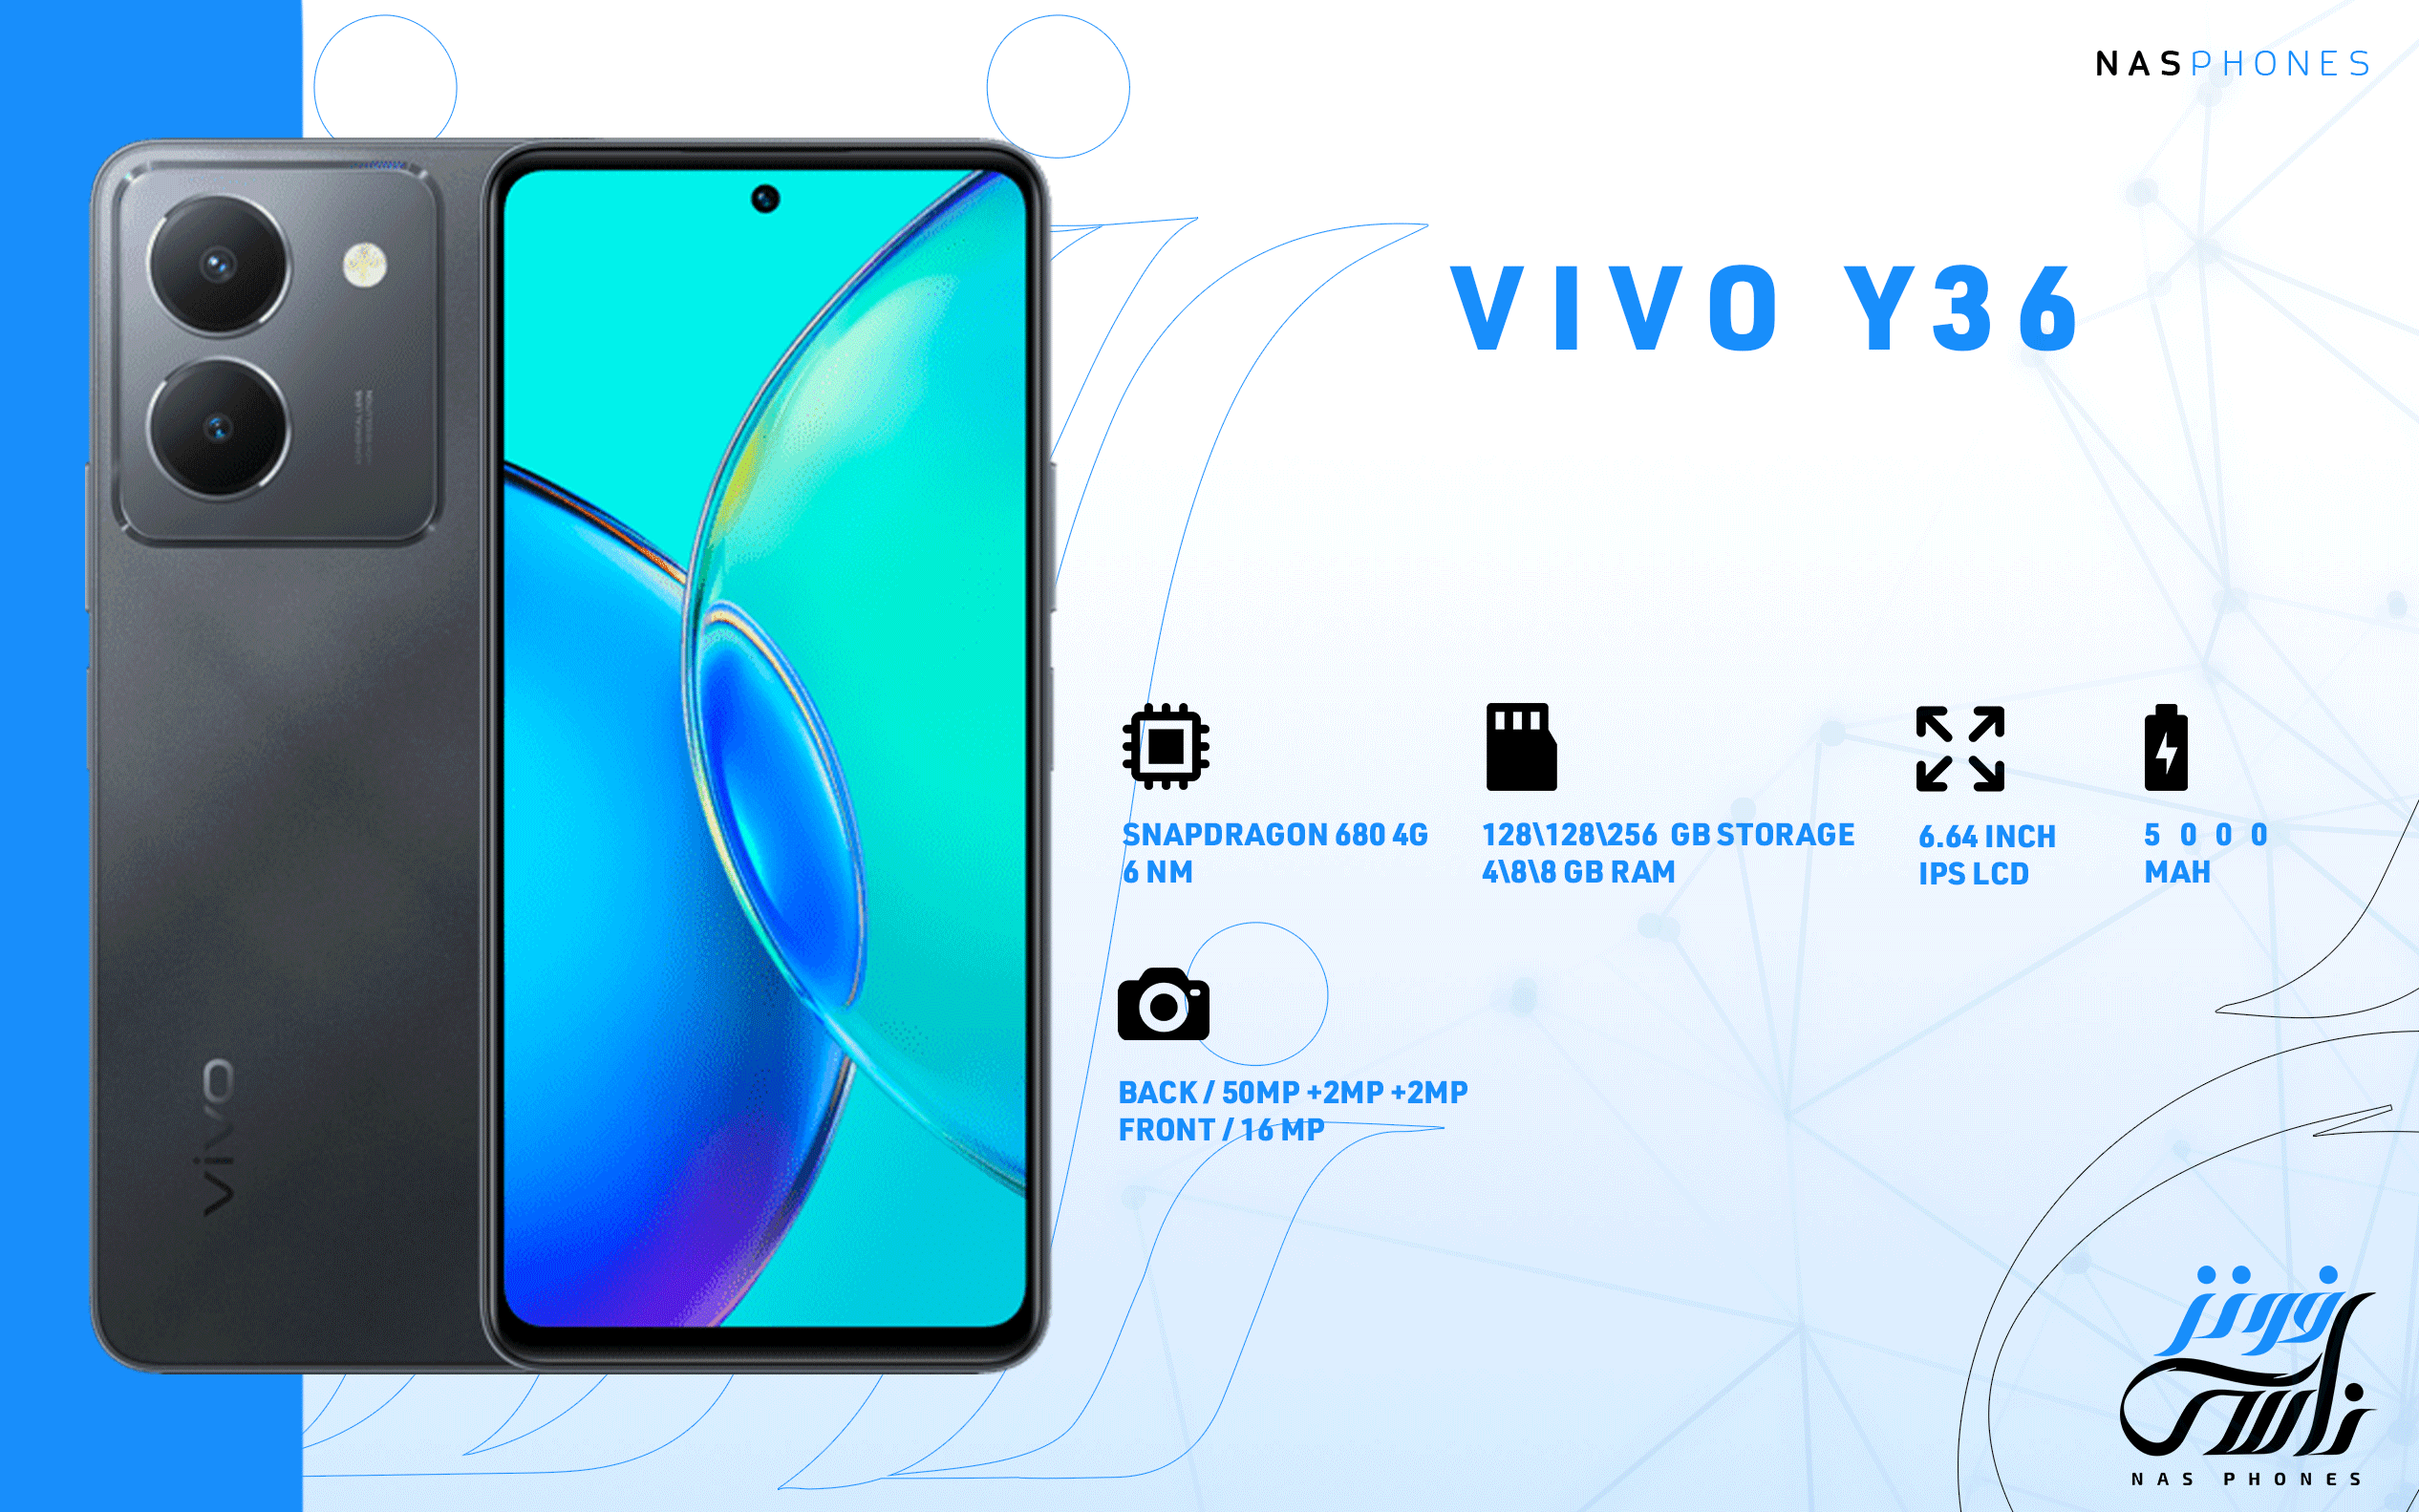 سعر ومواصفات هاتف Vivo Y36